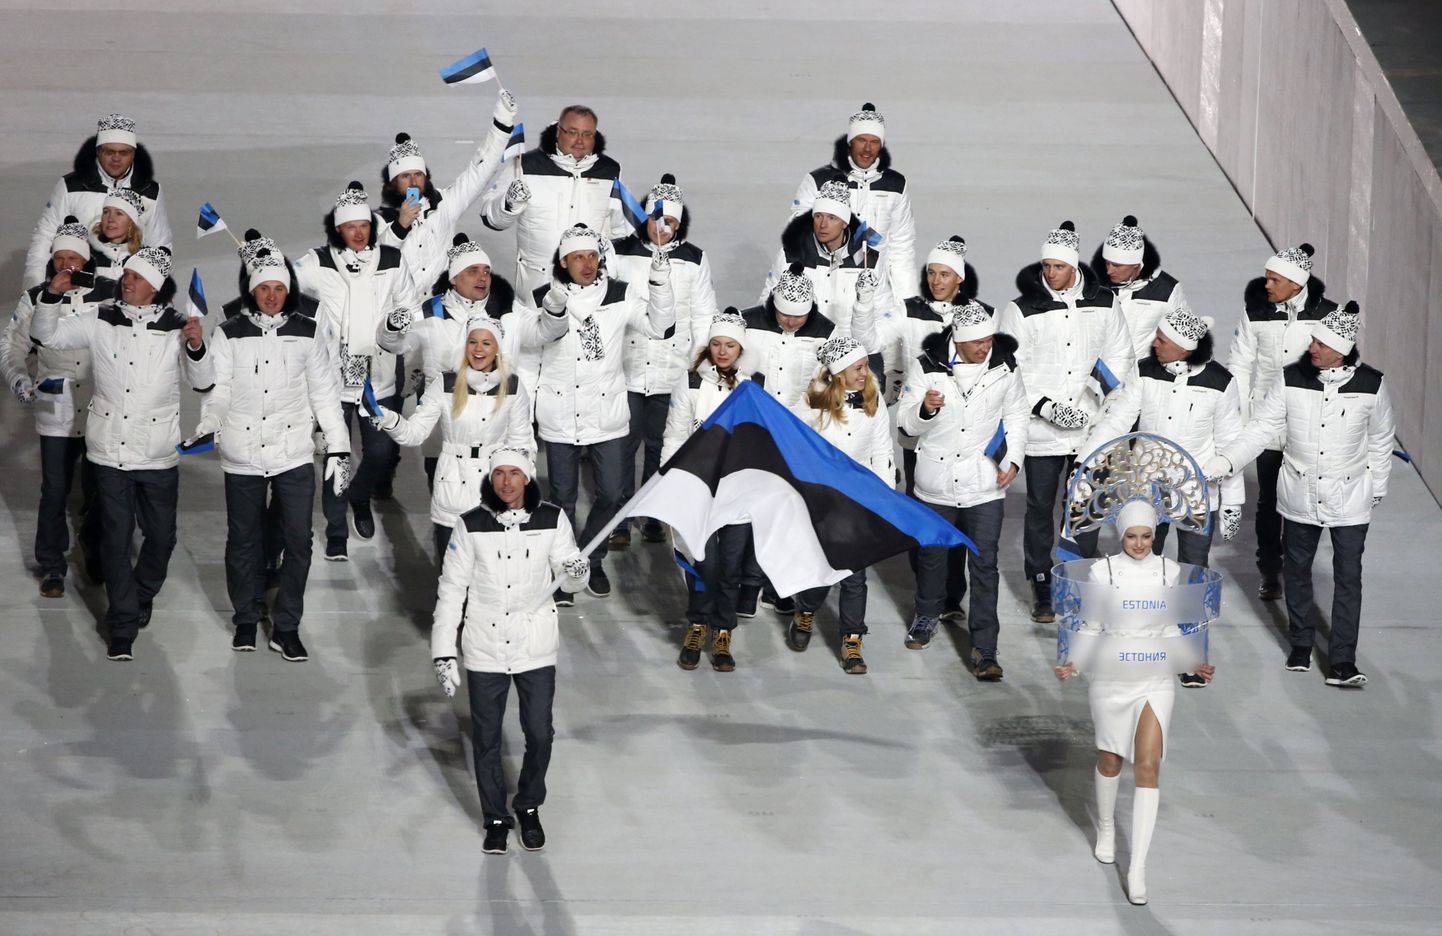 Sotši olümpiamängudelgi oli stardis 25 Eesti sportlast.